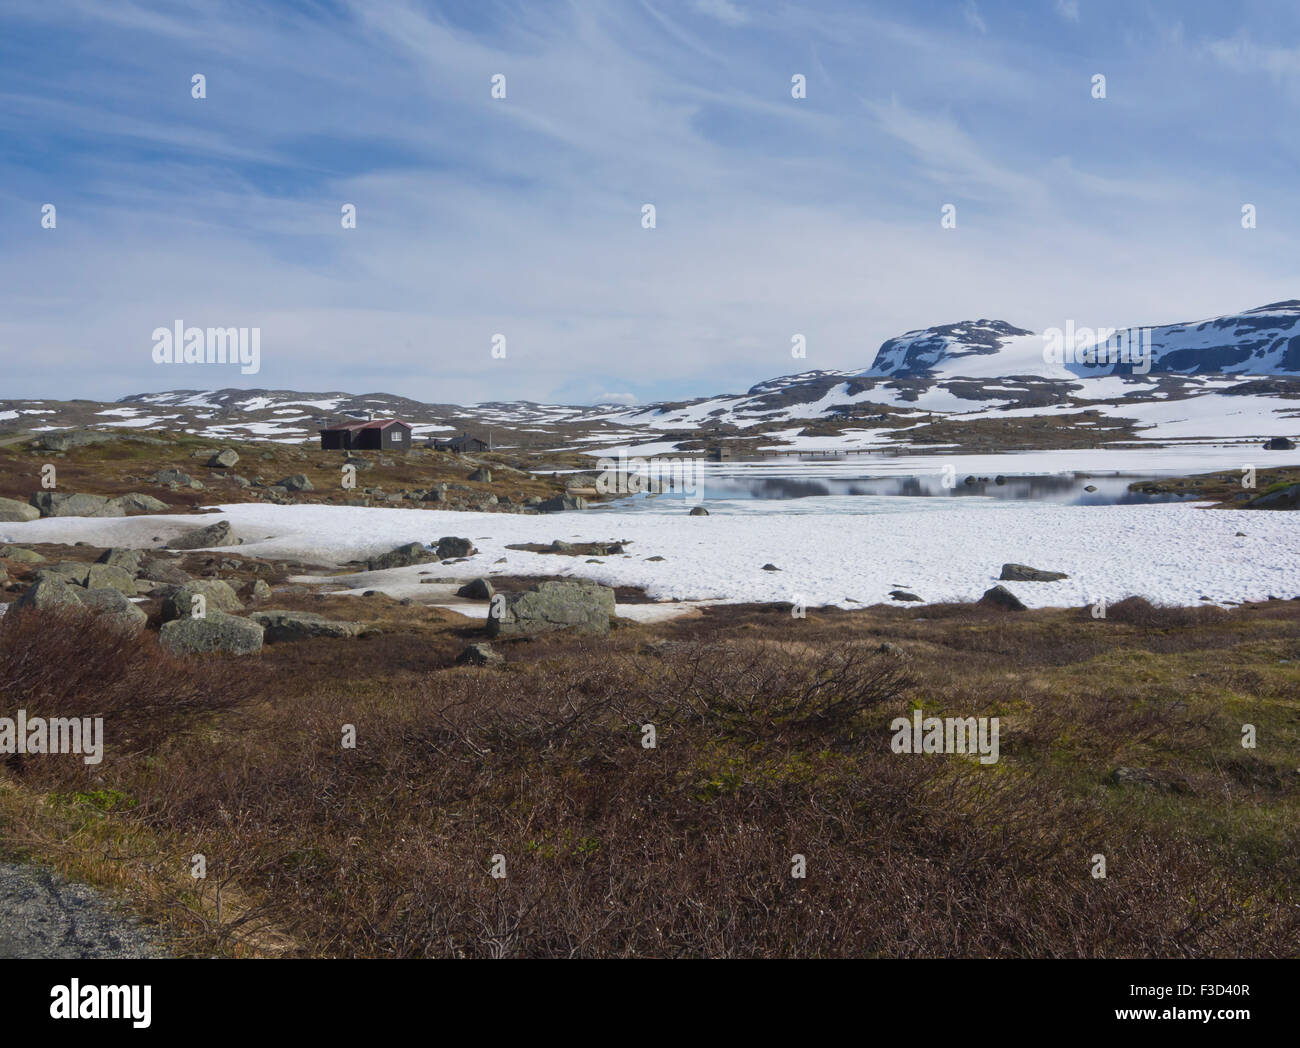 Panorama-Ansicht im norwegischen Bergen, kleine Hütte, See, Flecken von Schnee und entfernten Gletscher, Finse, Hardangervidda-Norwegen Stockfoto